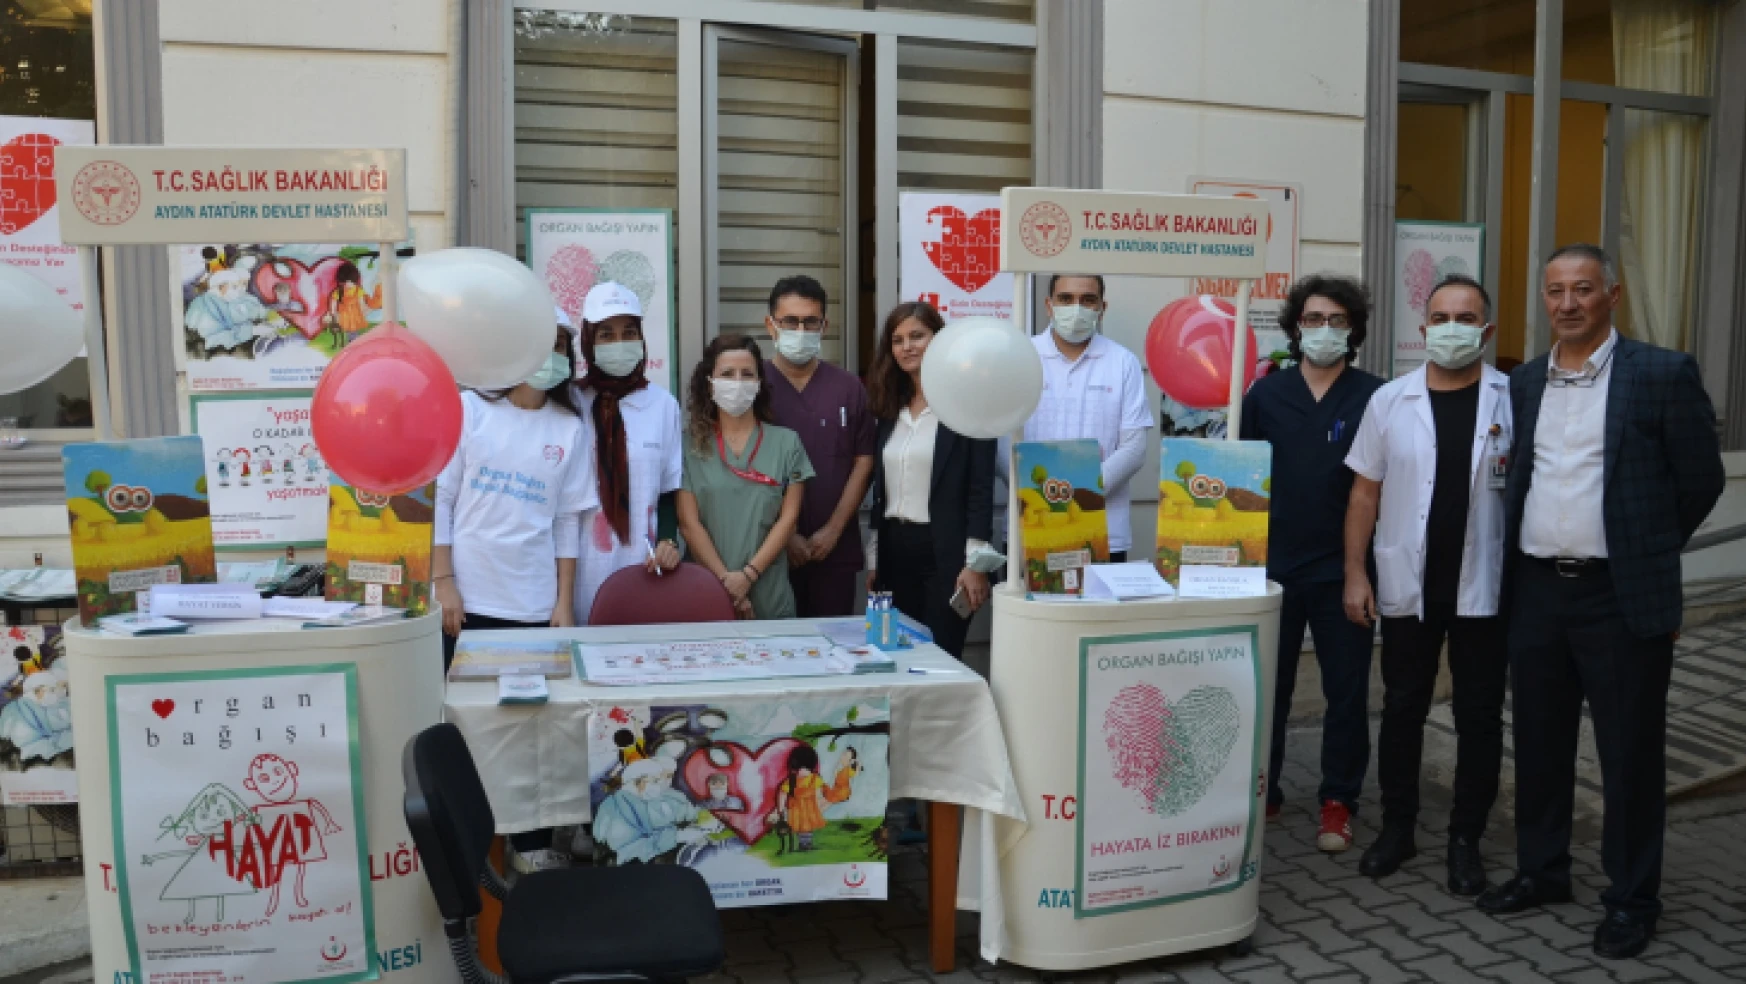 Atatürk Devlet Hastanesi, organ bağışı için çağrıda bulundu